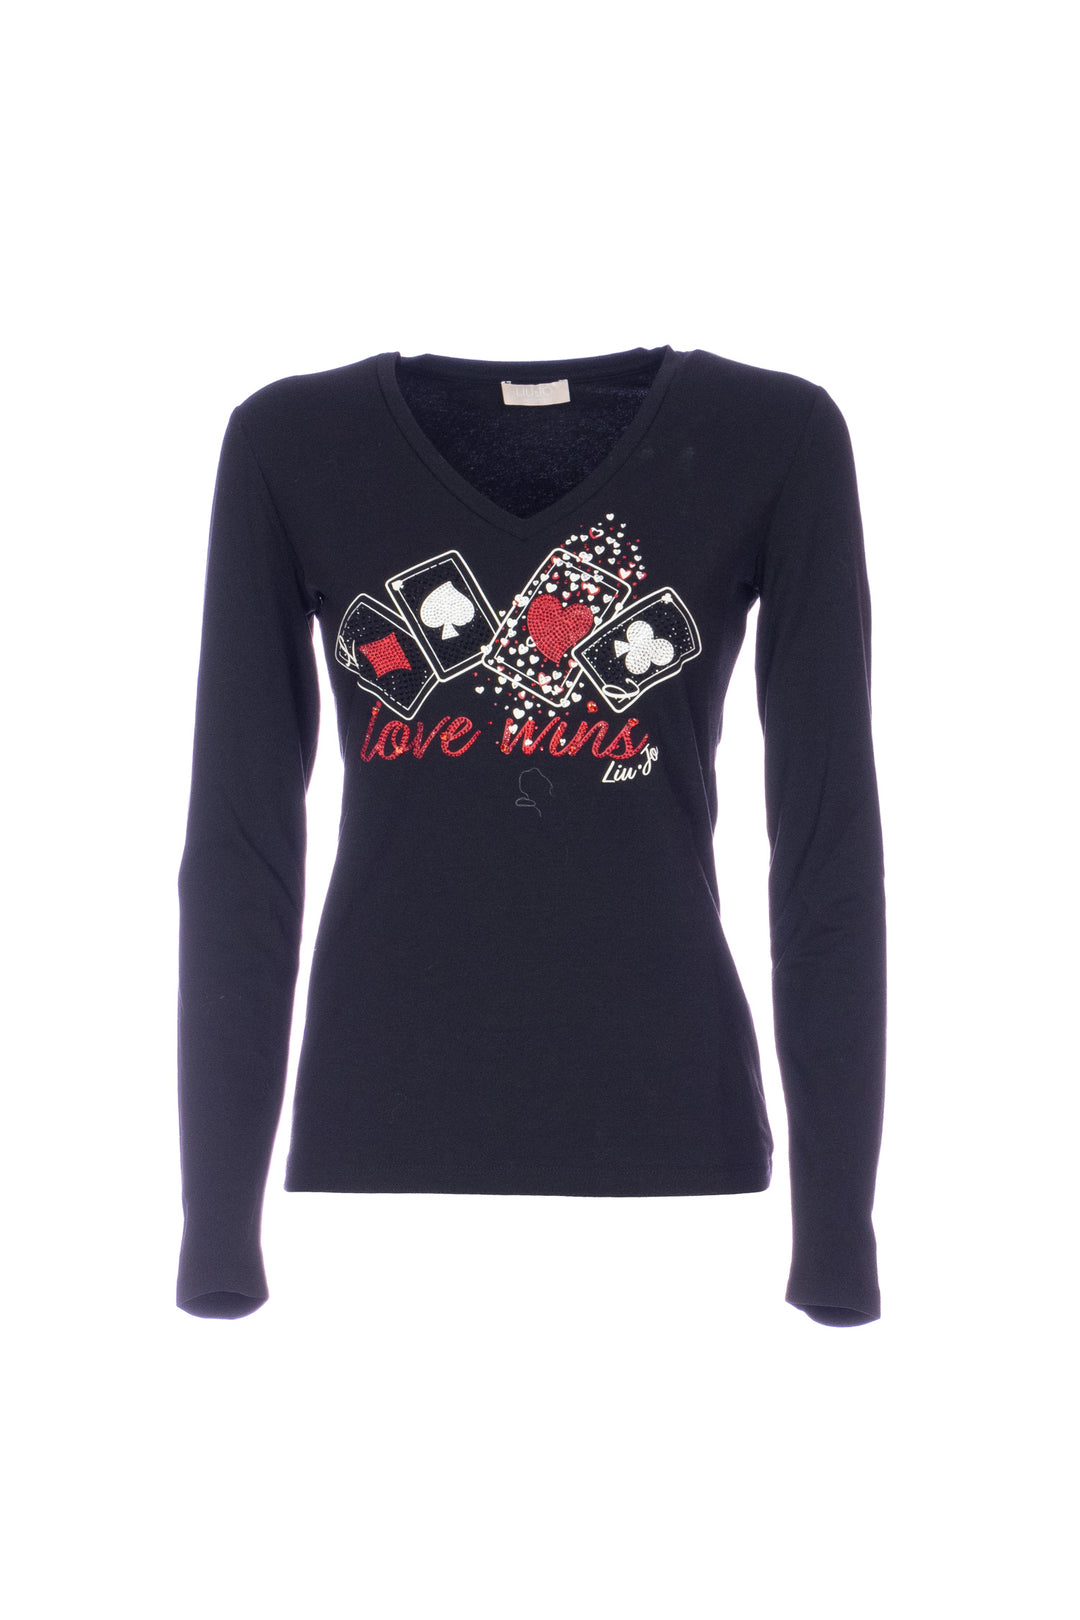 LIU JO T-shirt a maniche lunghe nera in cotone con stampa “Love Wins” - Mancinelli 1954